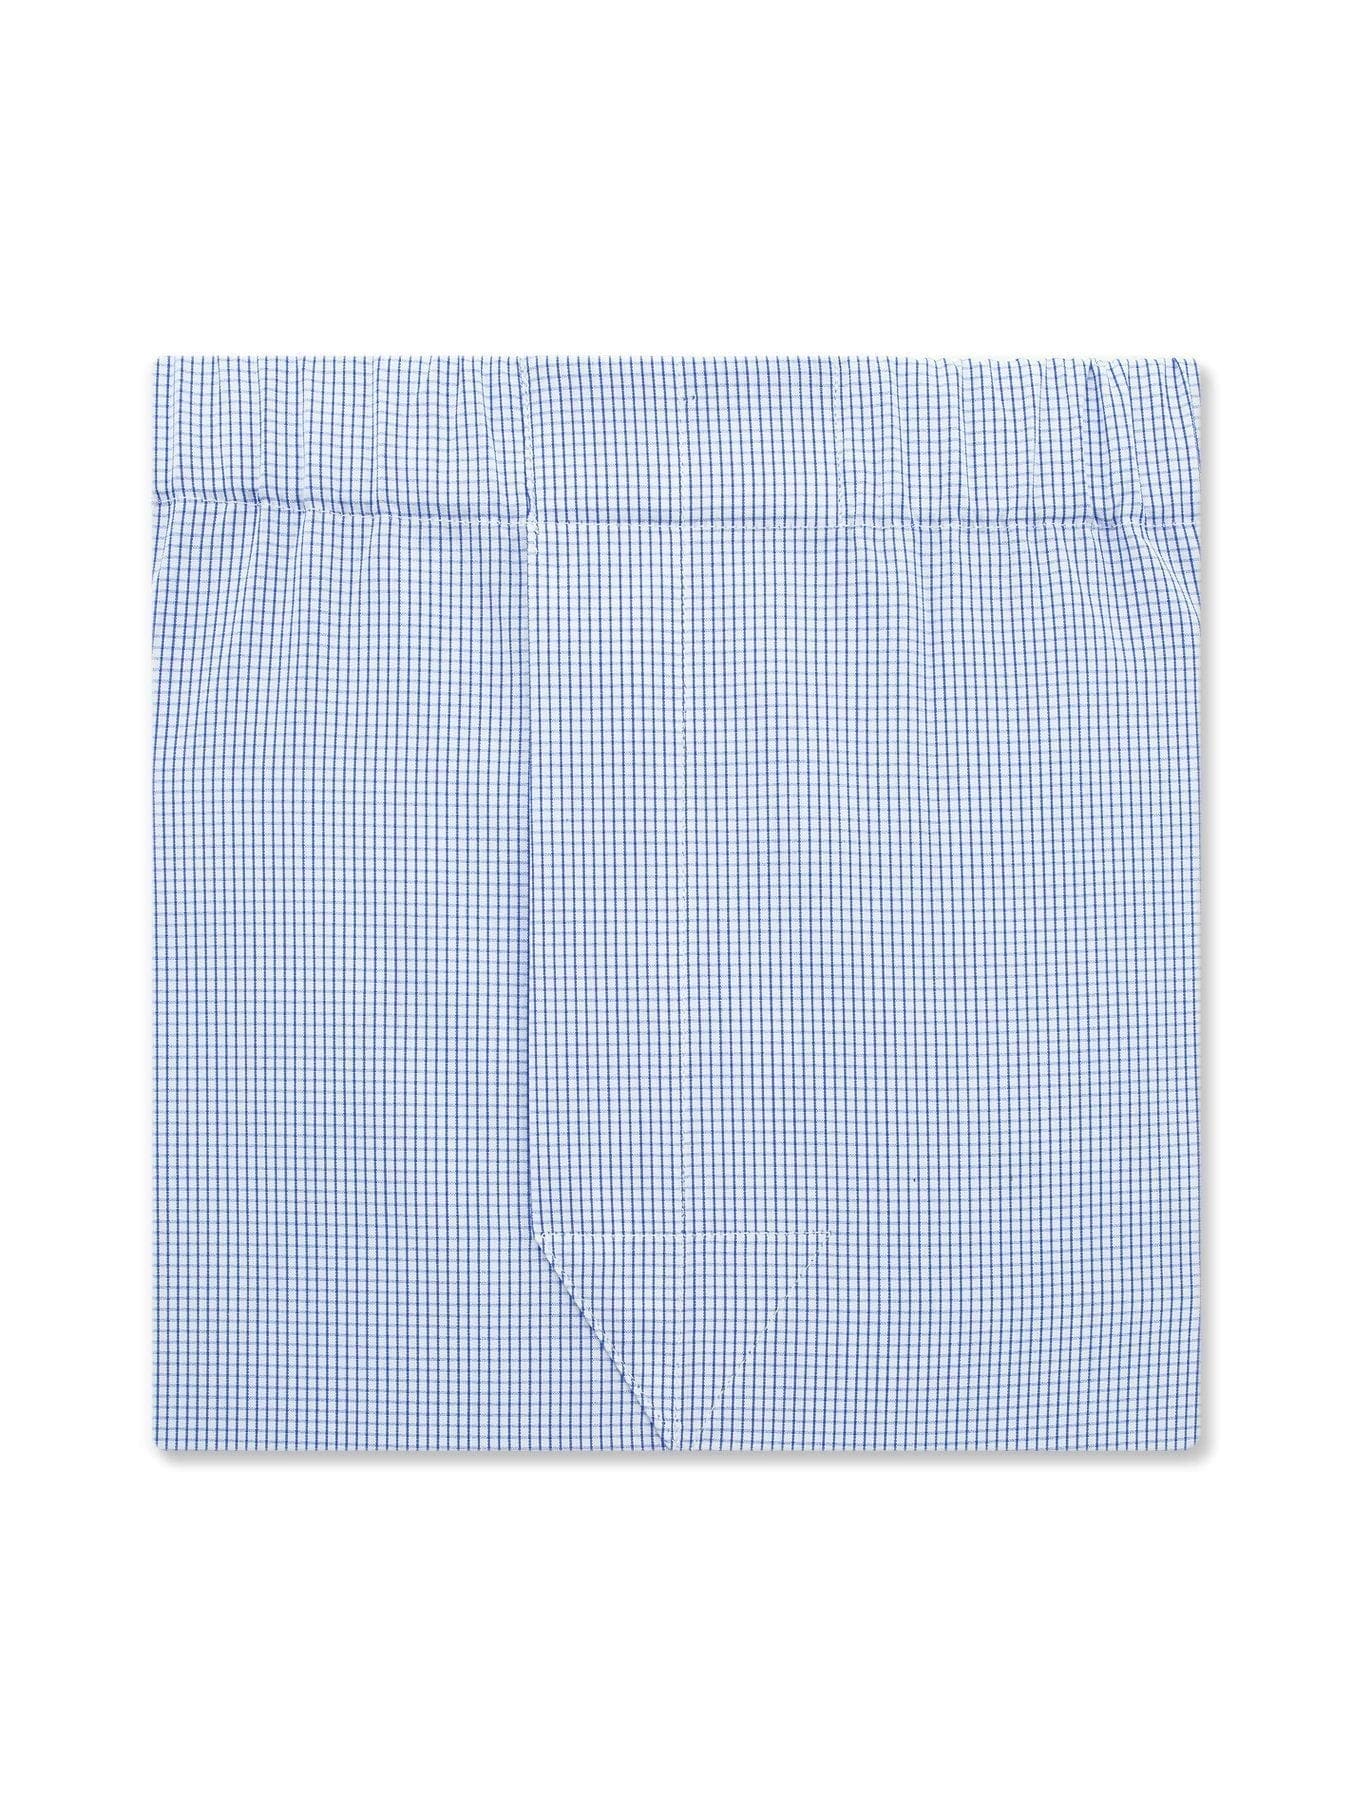 Classic Boxer Shorts in a Blue & White Check Poplin Cotton